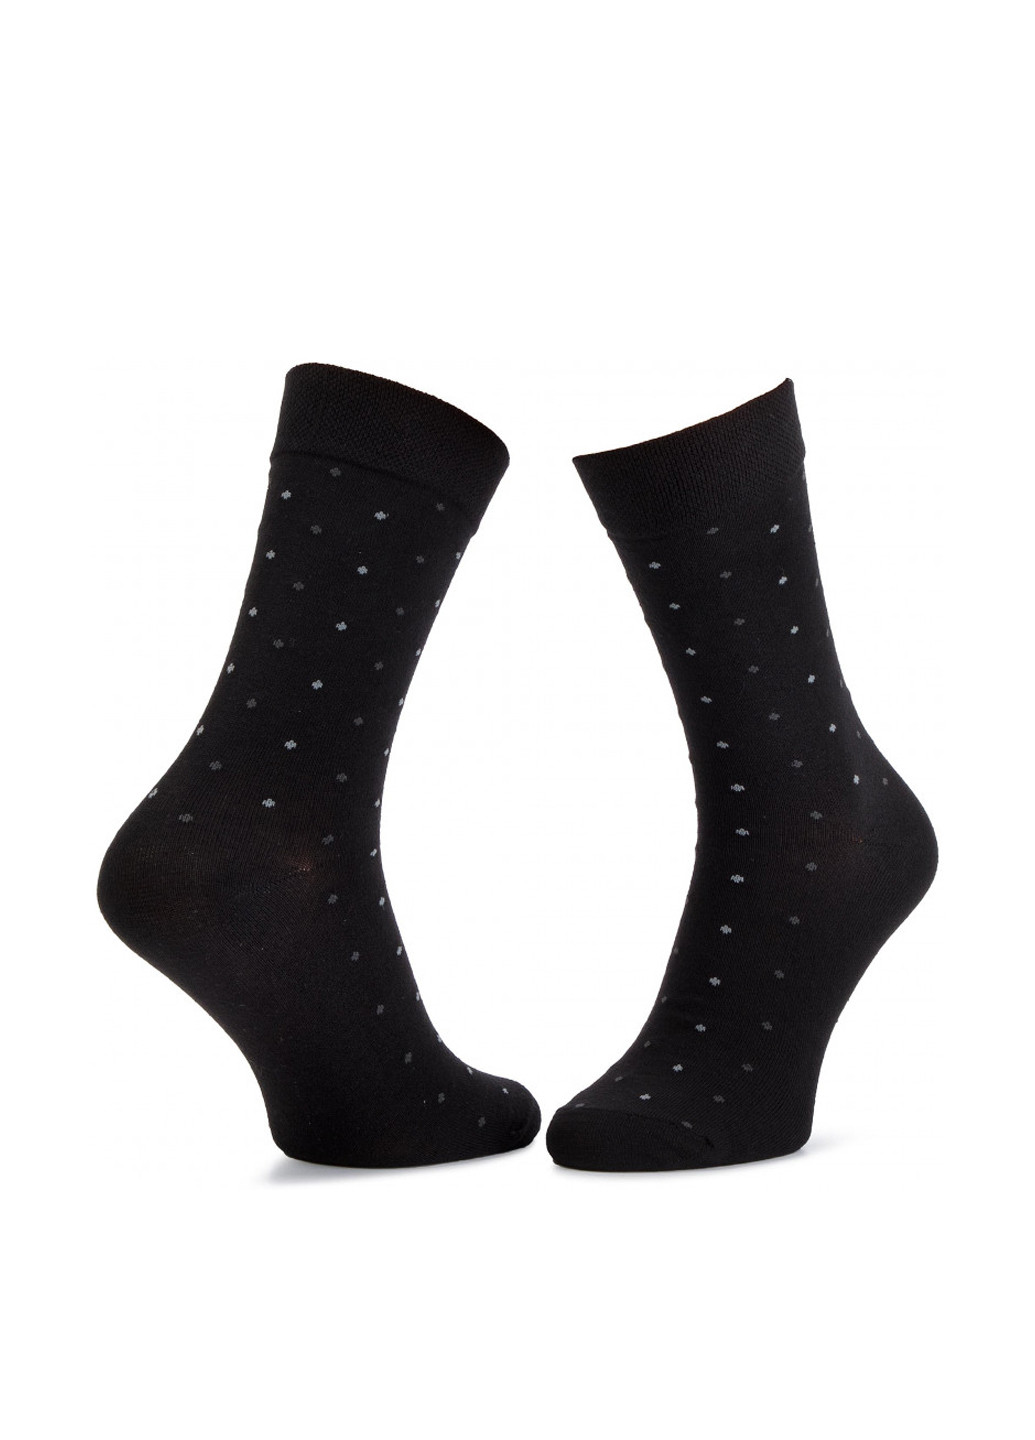 Шкарпетки чоловічі SKARPETY WIZYTOWE (LISTKI) 42-44 Lasocki SKARPETY WIZYTOWE (LISTKI горошки чёрные повседневные